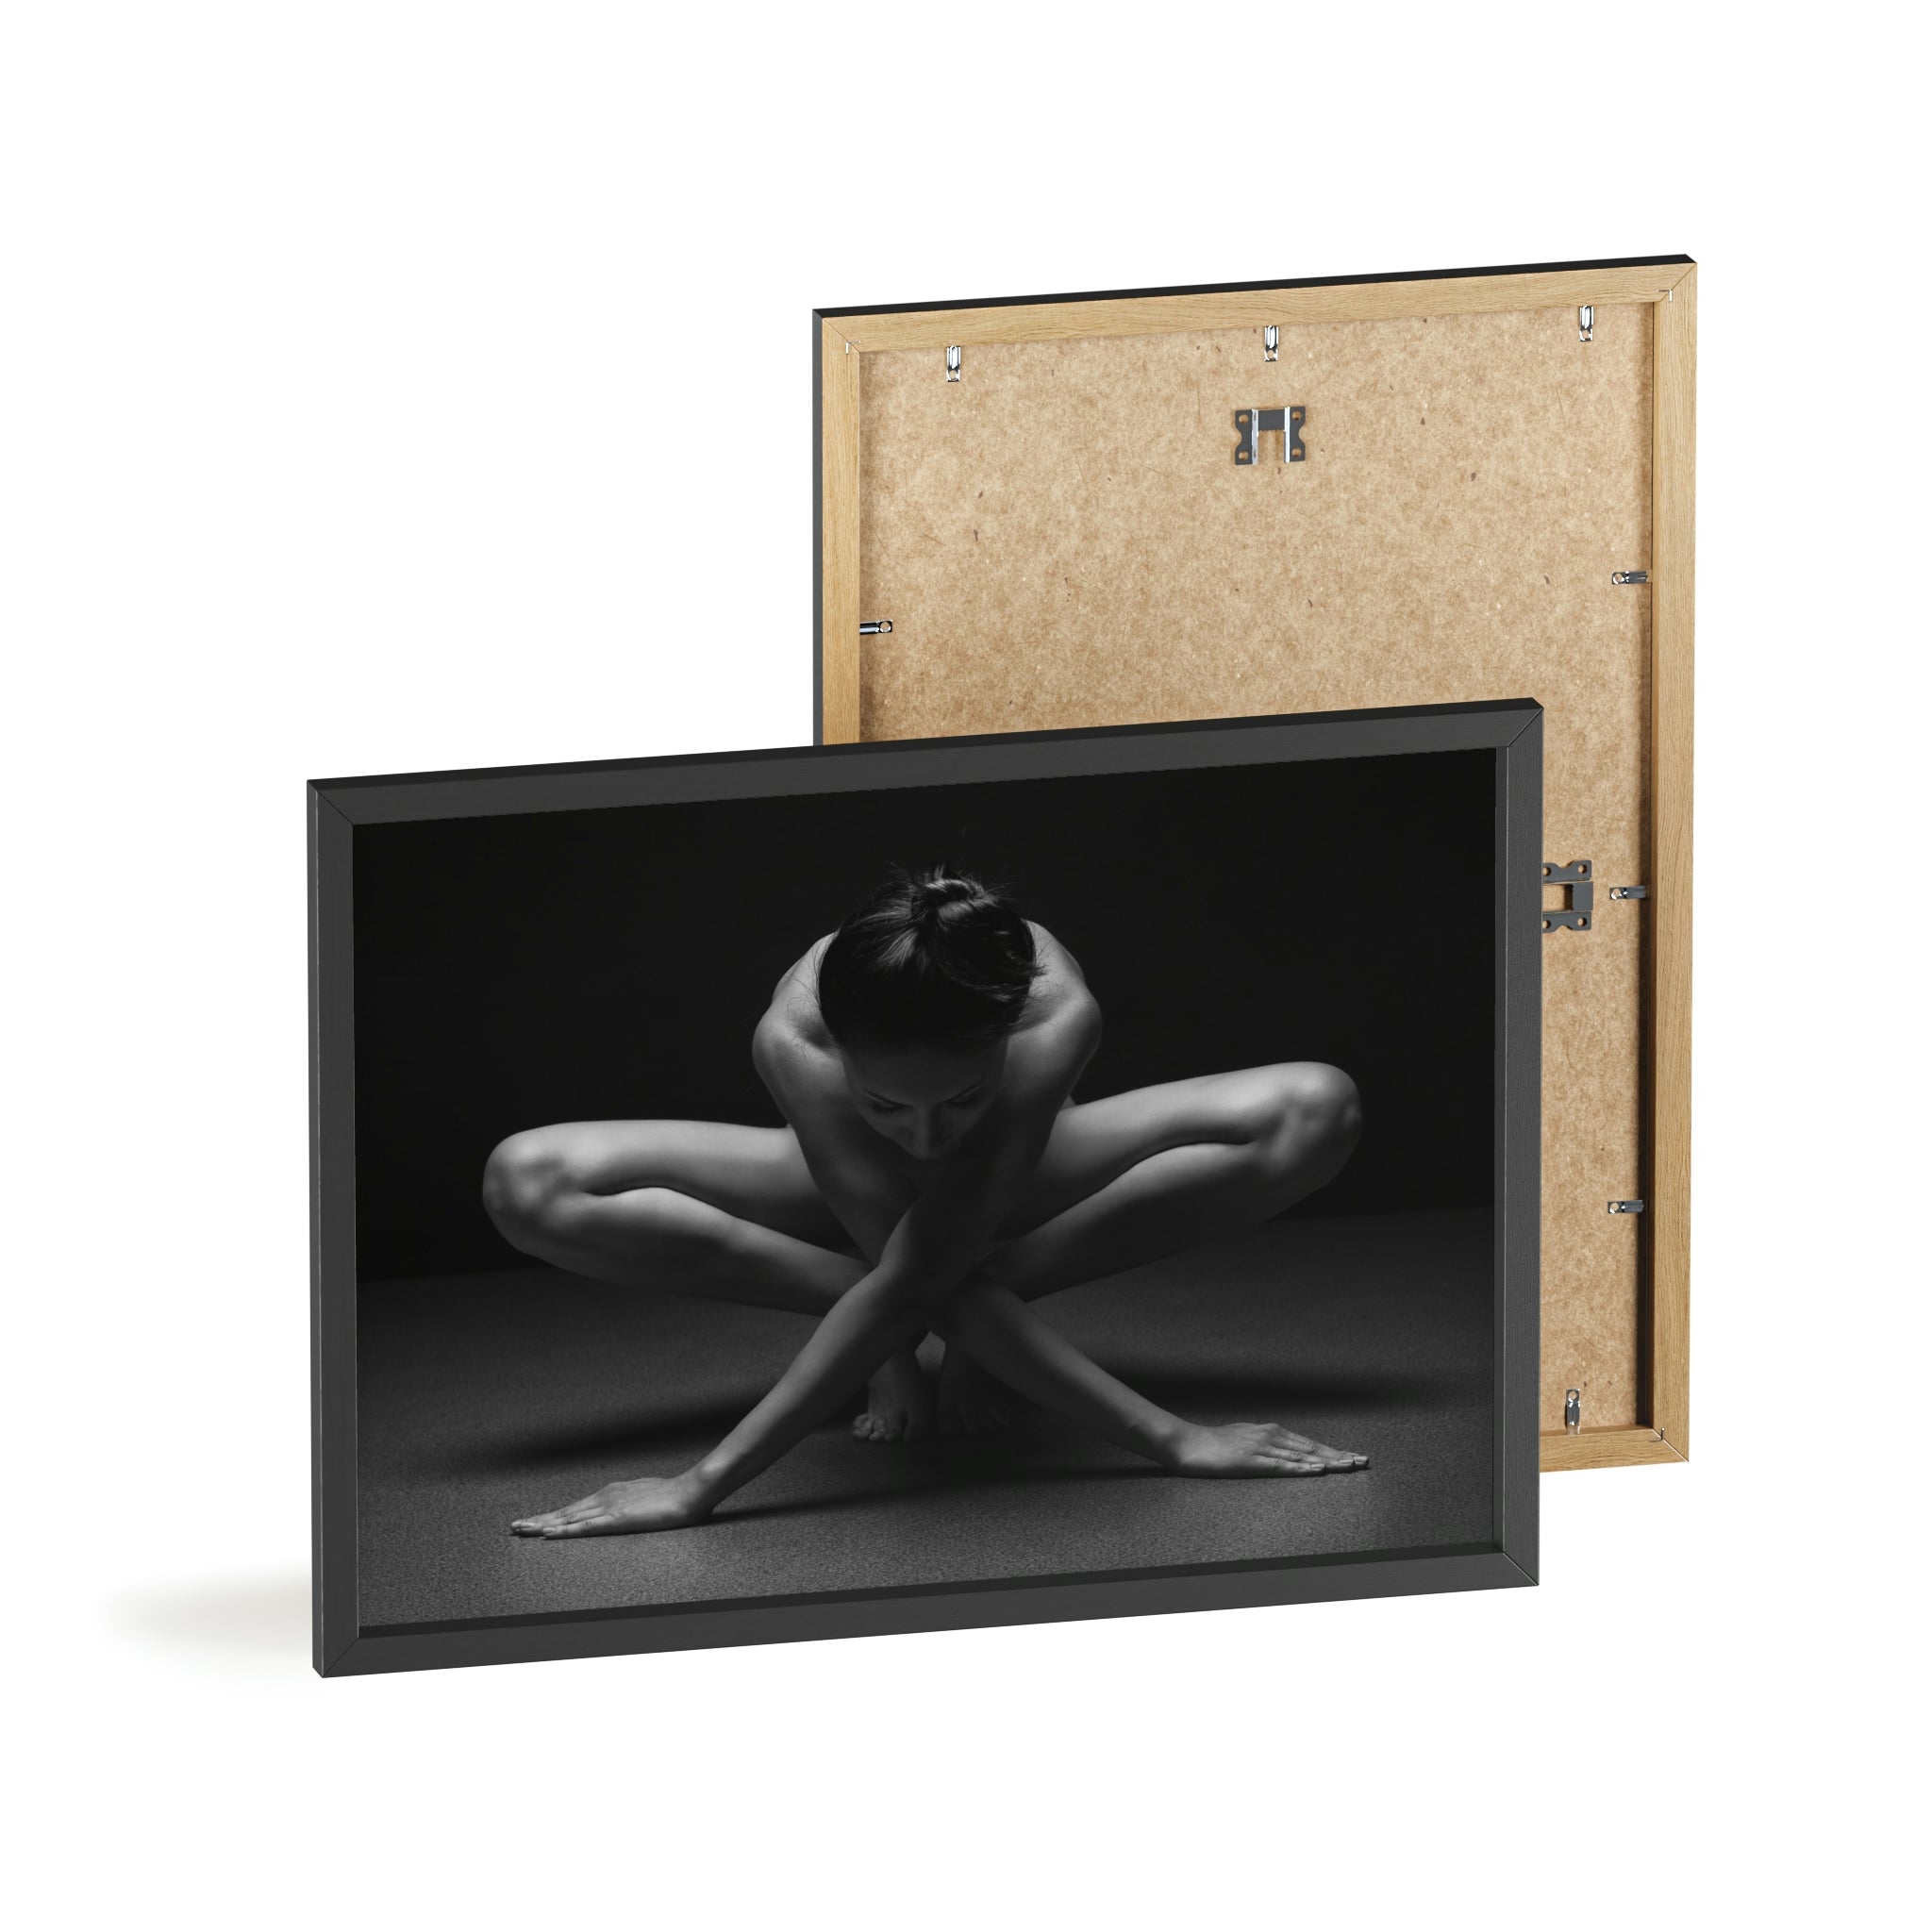 Pose de yoga - Impression avec cadre en bois